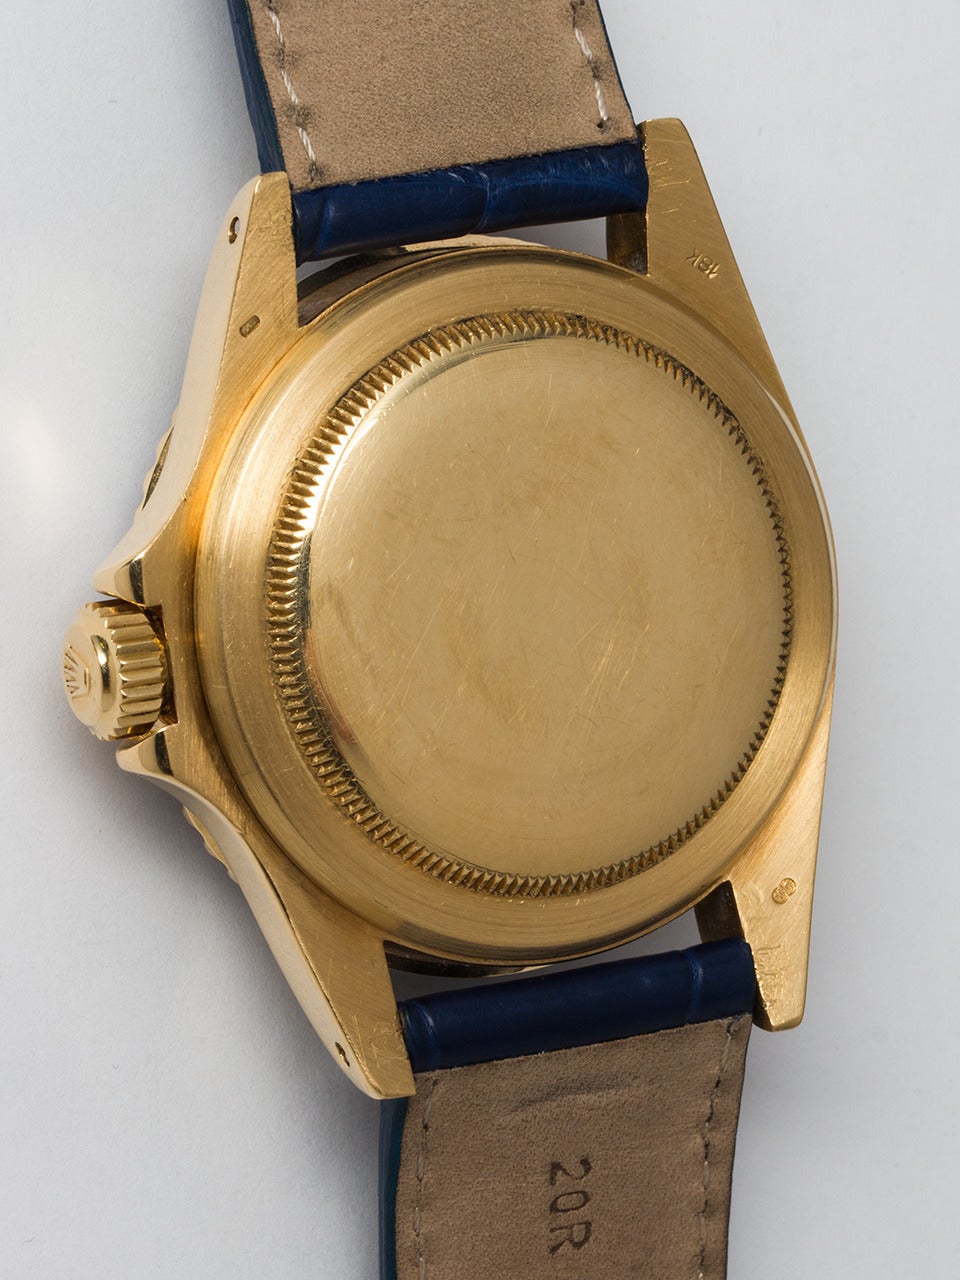 Men's Rolex Yellow Gold Submariner Wristwatch Ref 1680